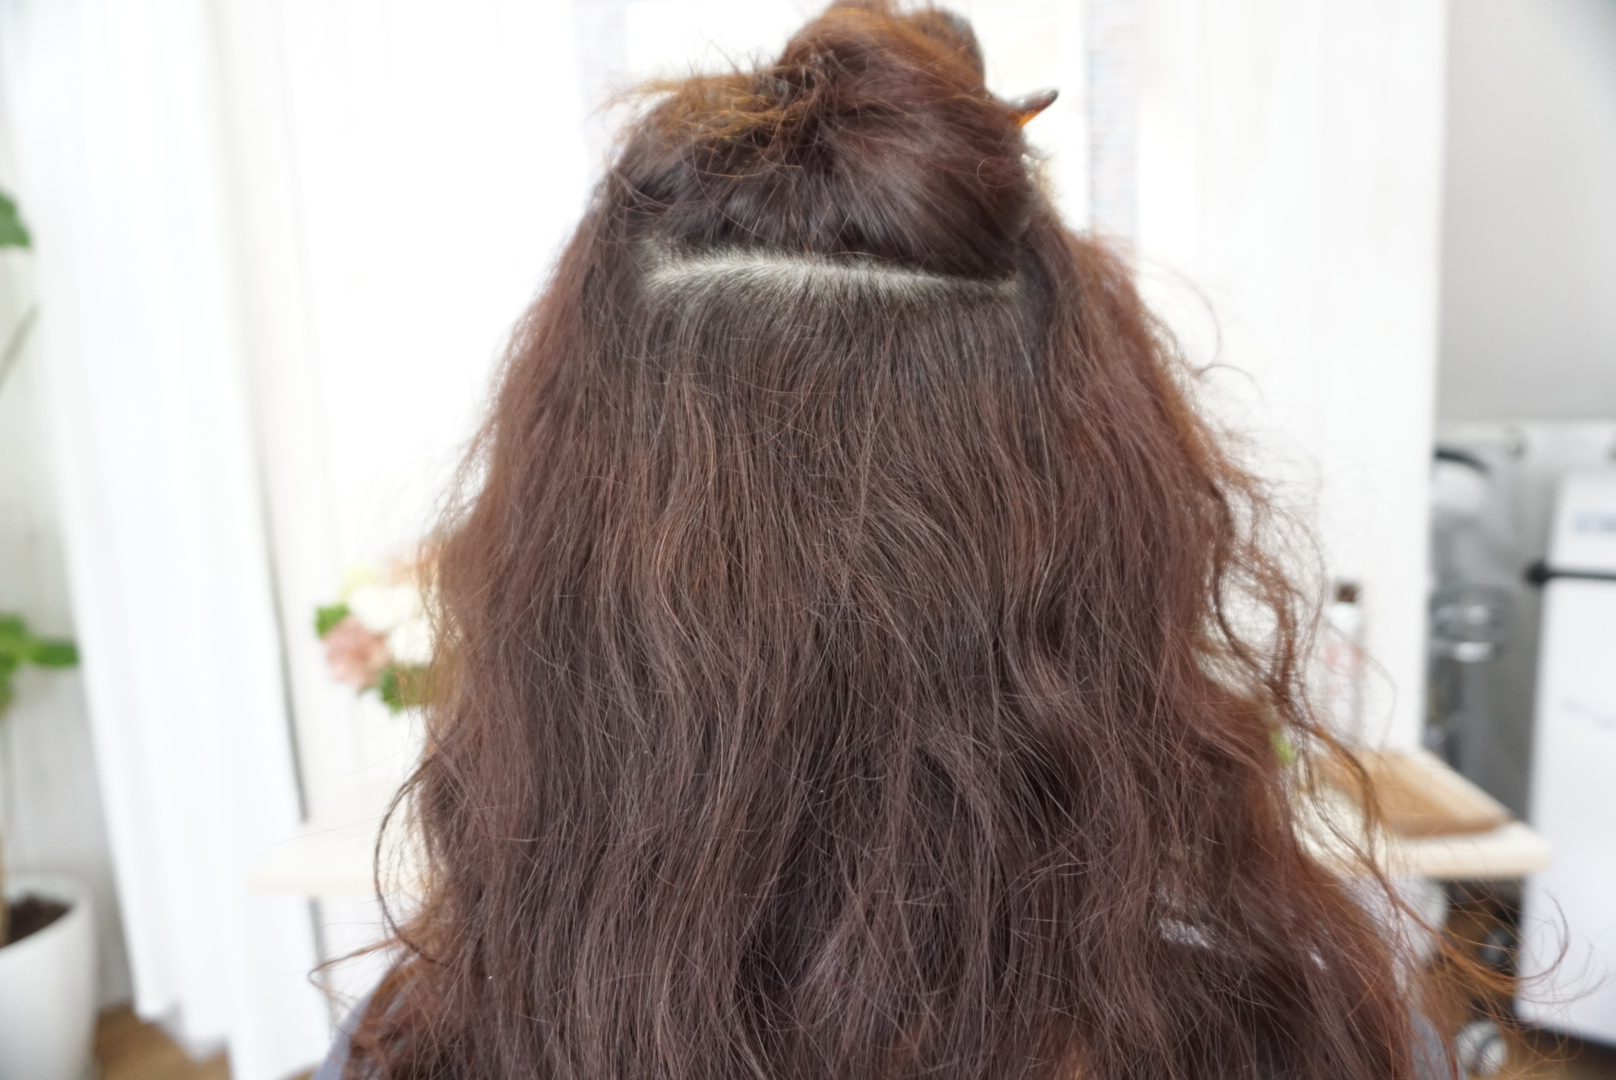 女性の髪の毛